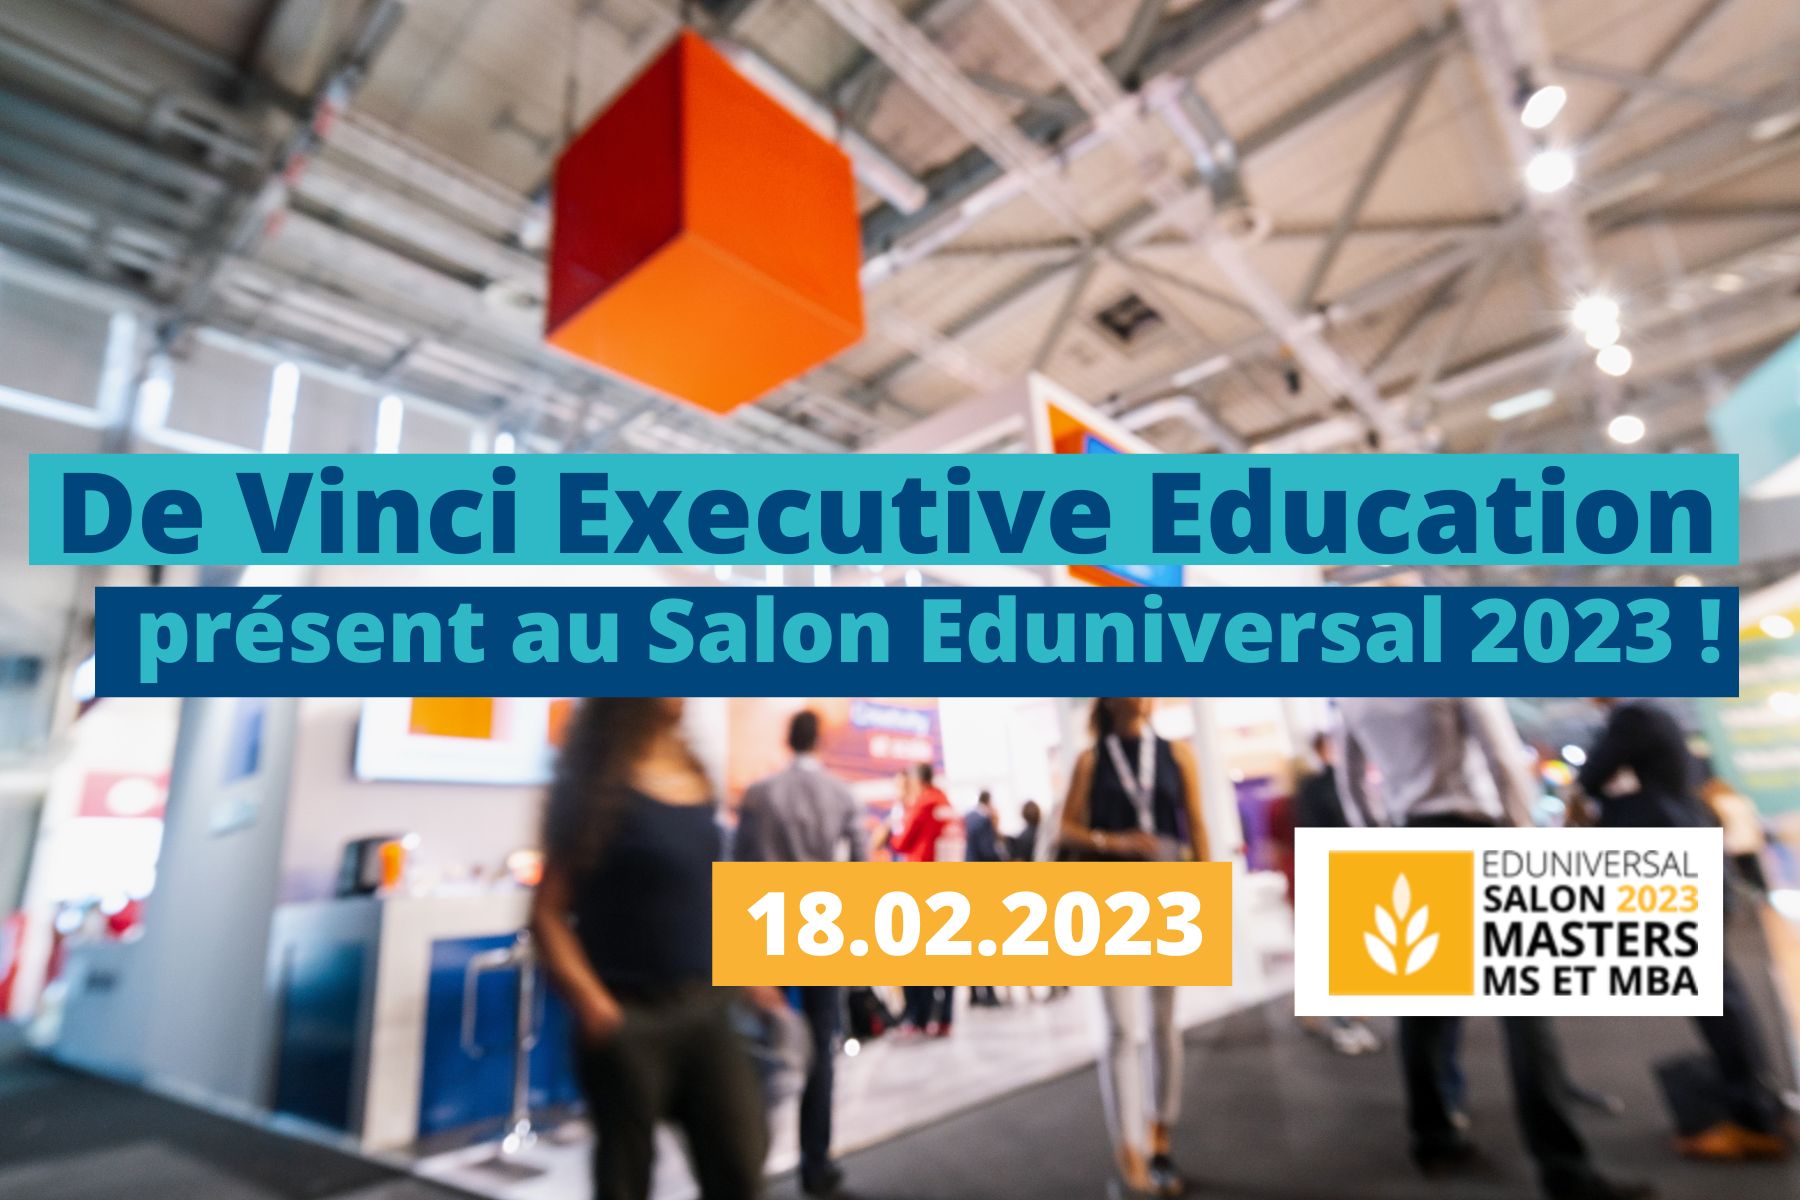 Article De Vinci Executive Education présent au Salon Eduniversal des Meilleurs Masters, MS et MBA 2023 !